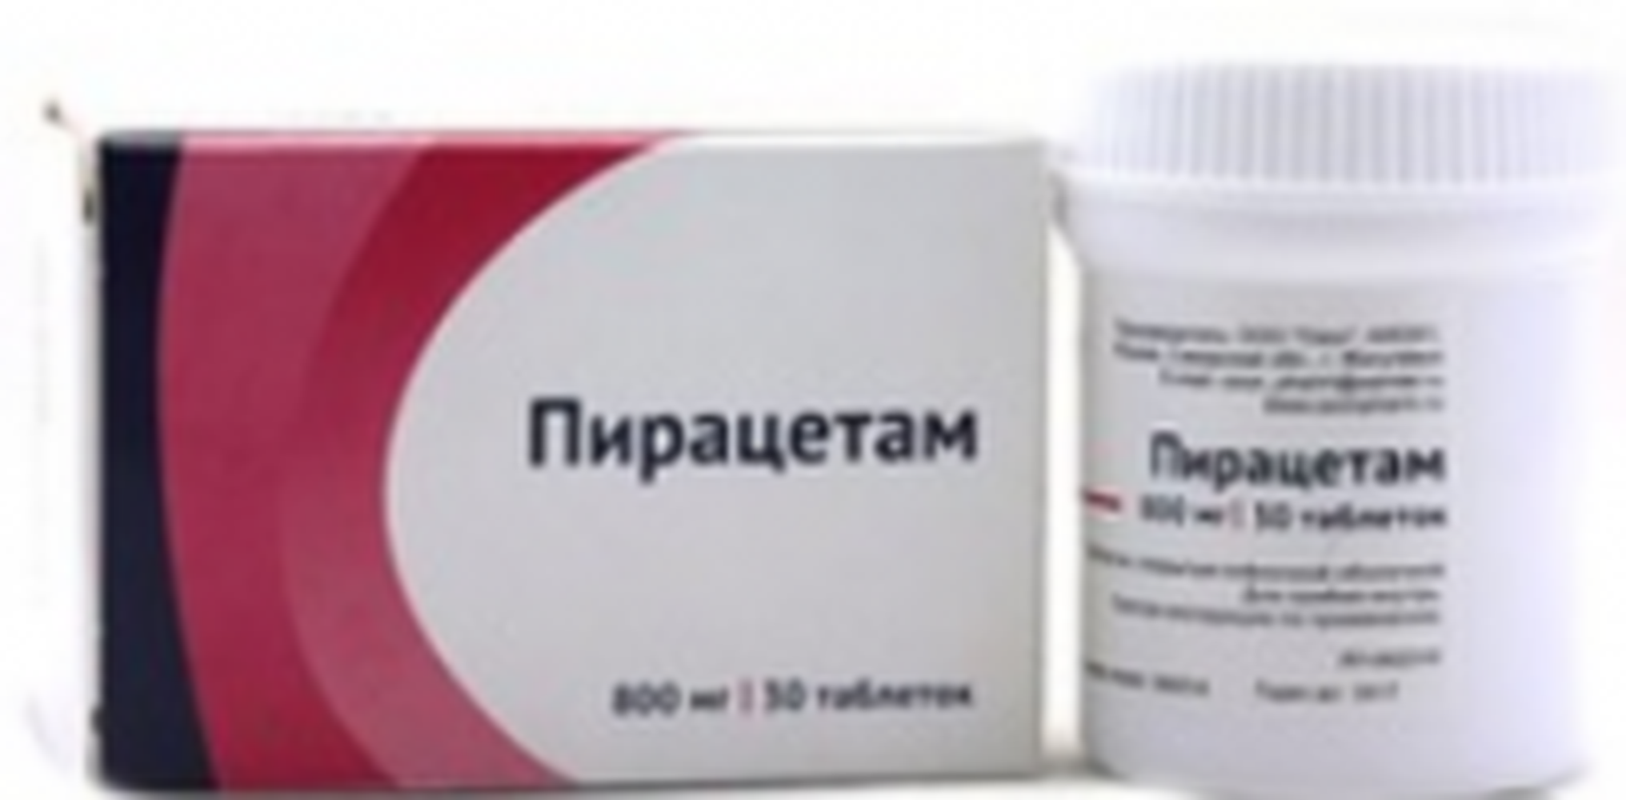 Piracetam 800mg 30 pills buy nootropic drug online